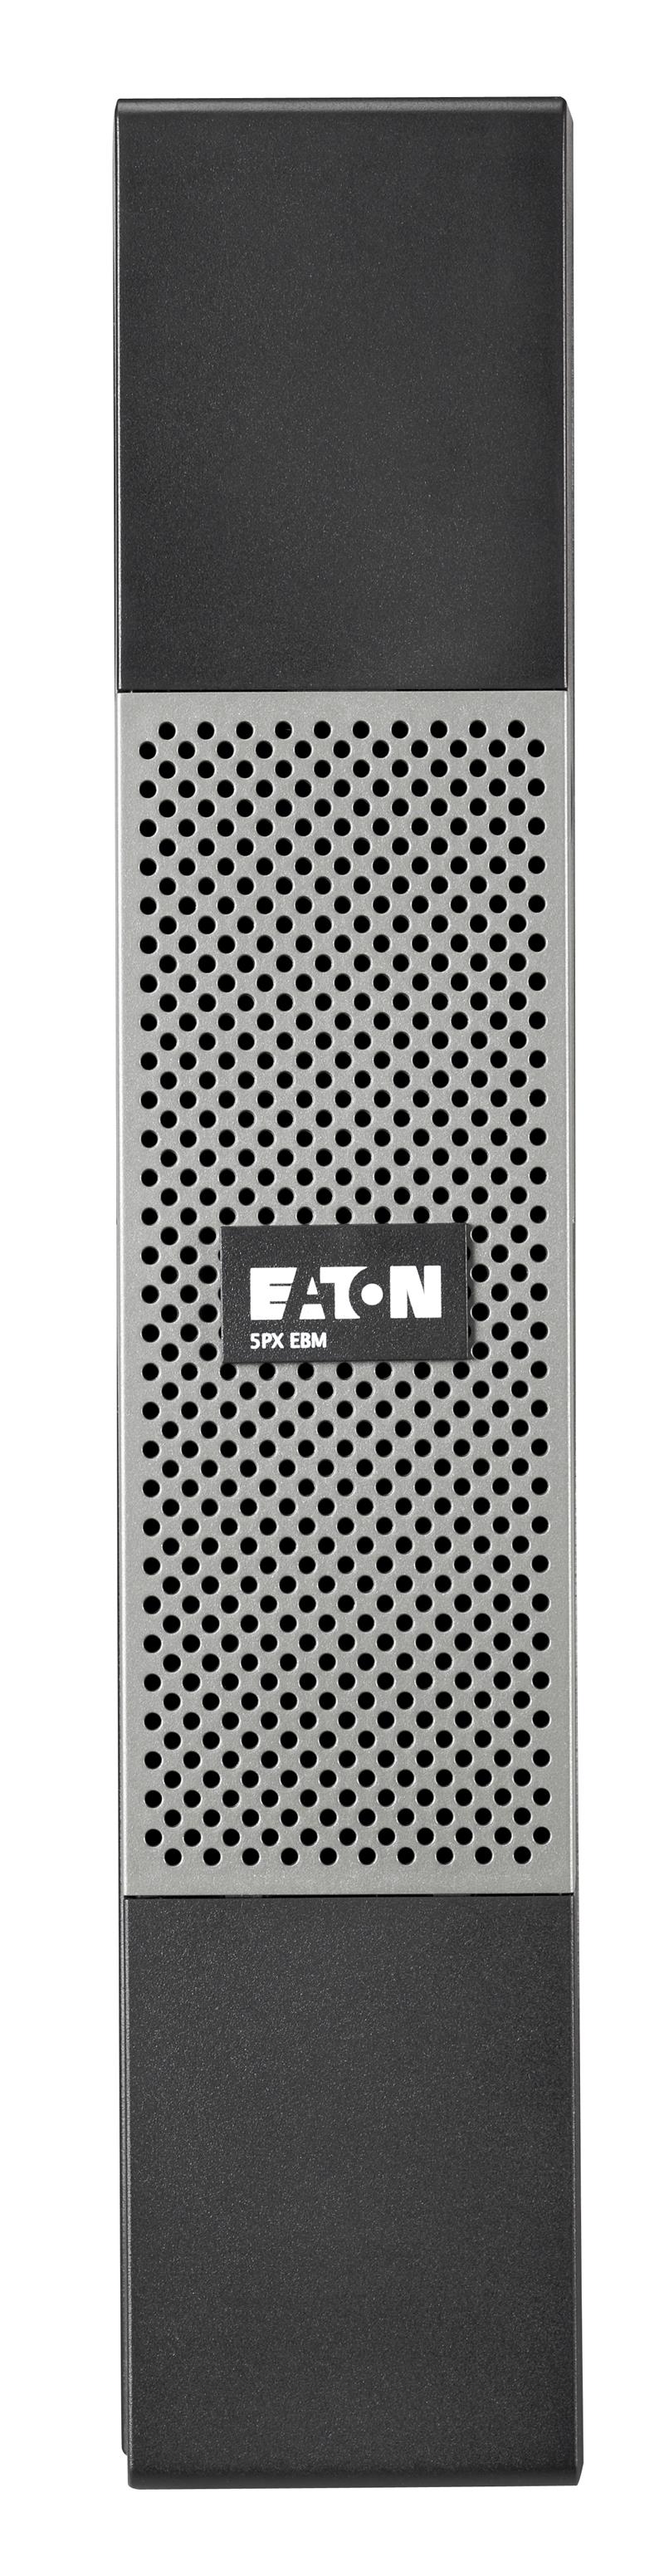 Eaton 5PX EBM 72V RT2U